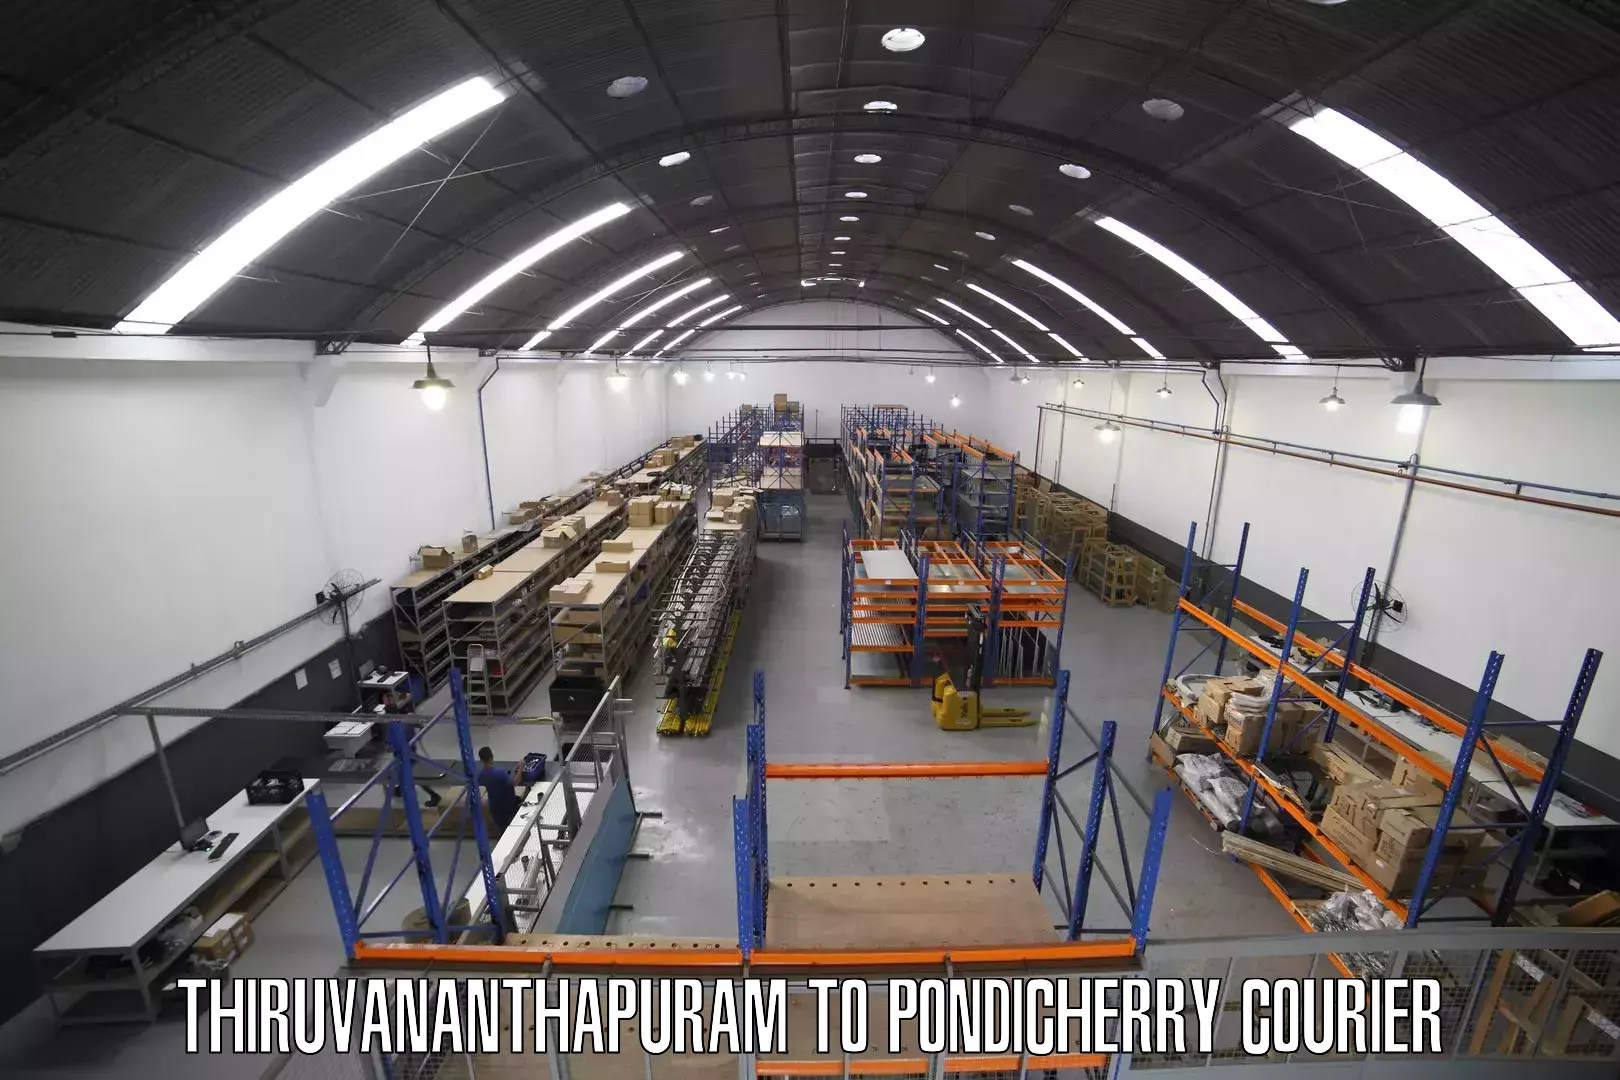 Global logistics network Thiruvananthapuram to Pondicherry